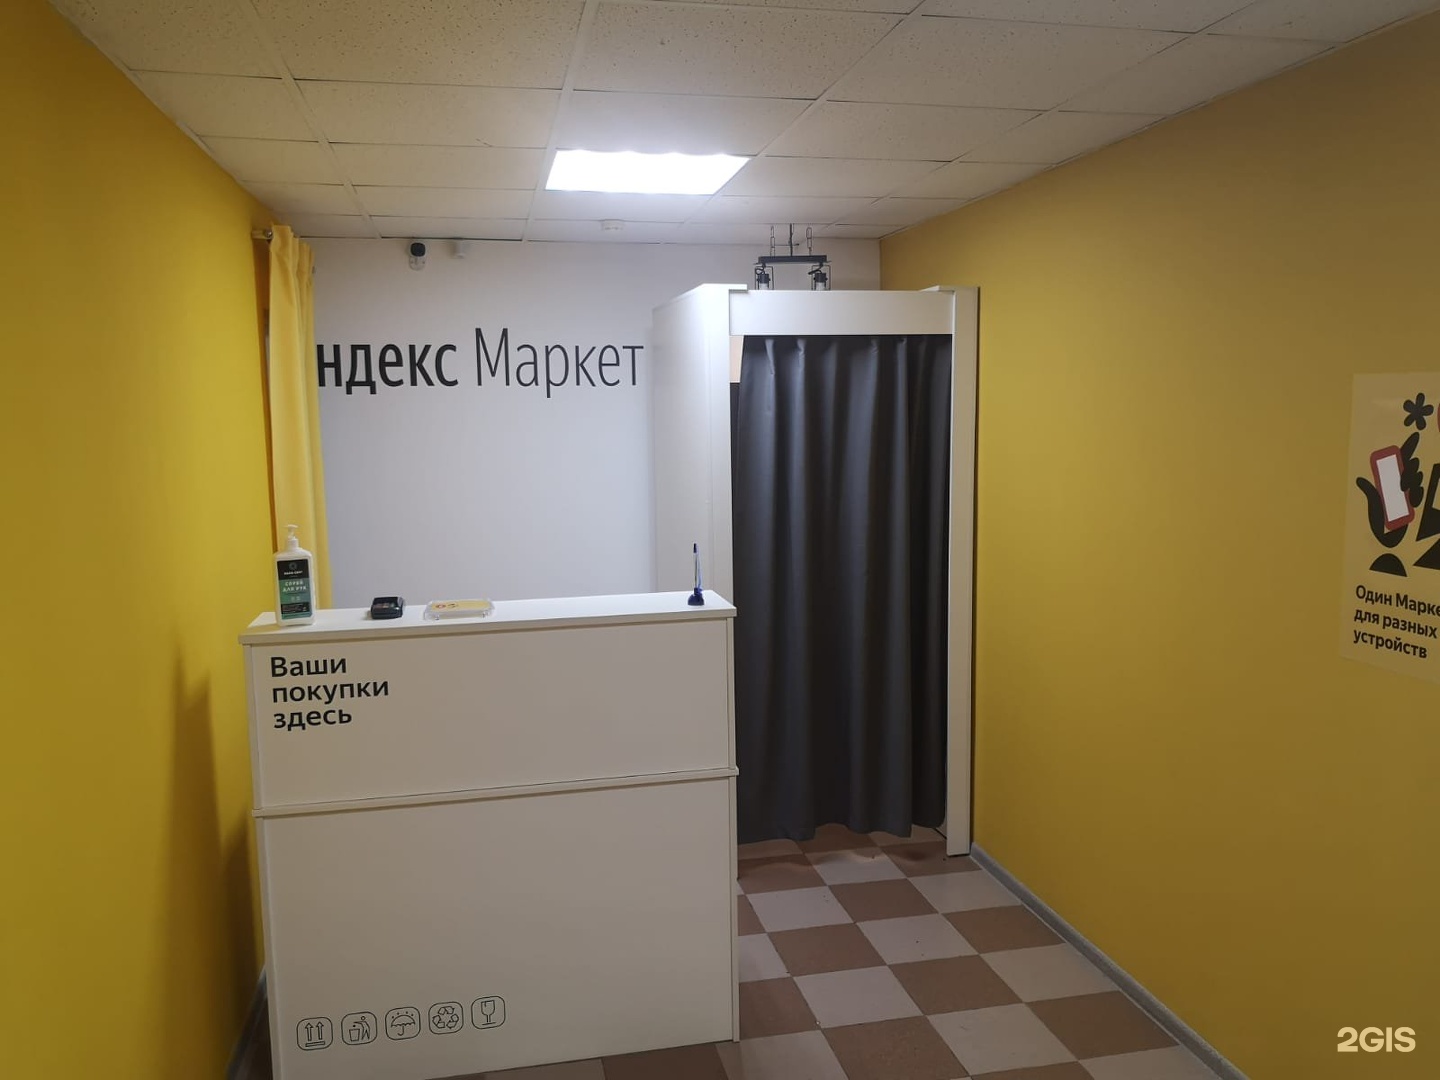 Пункты выдачи Яндекс Маркет в Рязани